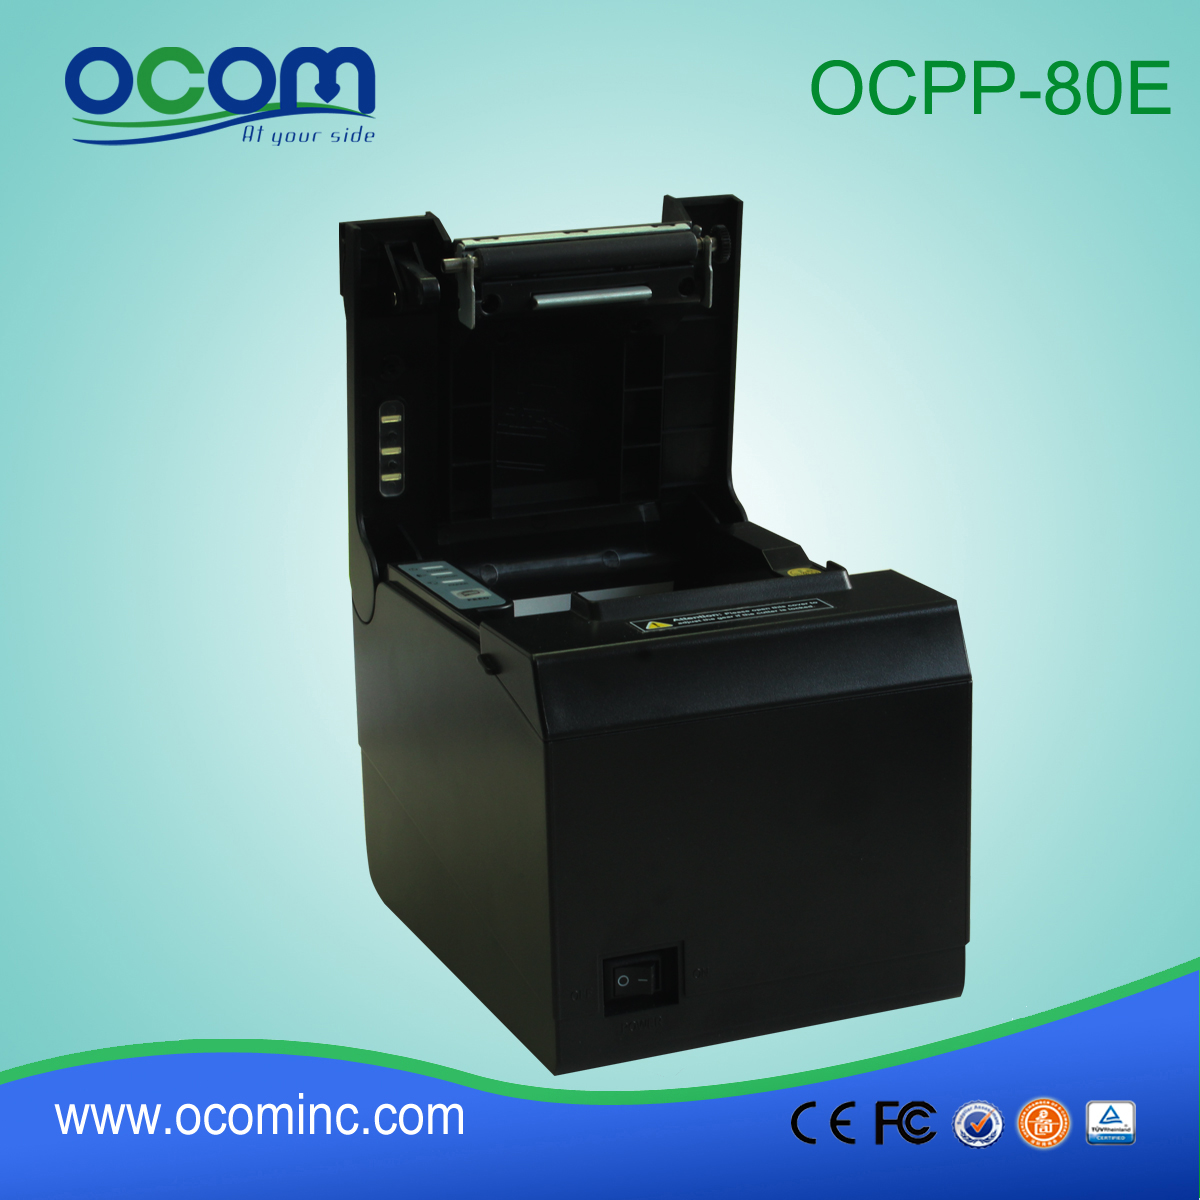 OCPP-80E USB Serial auto cutter 80mm cheap receipt printer pos thermal